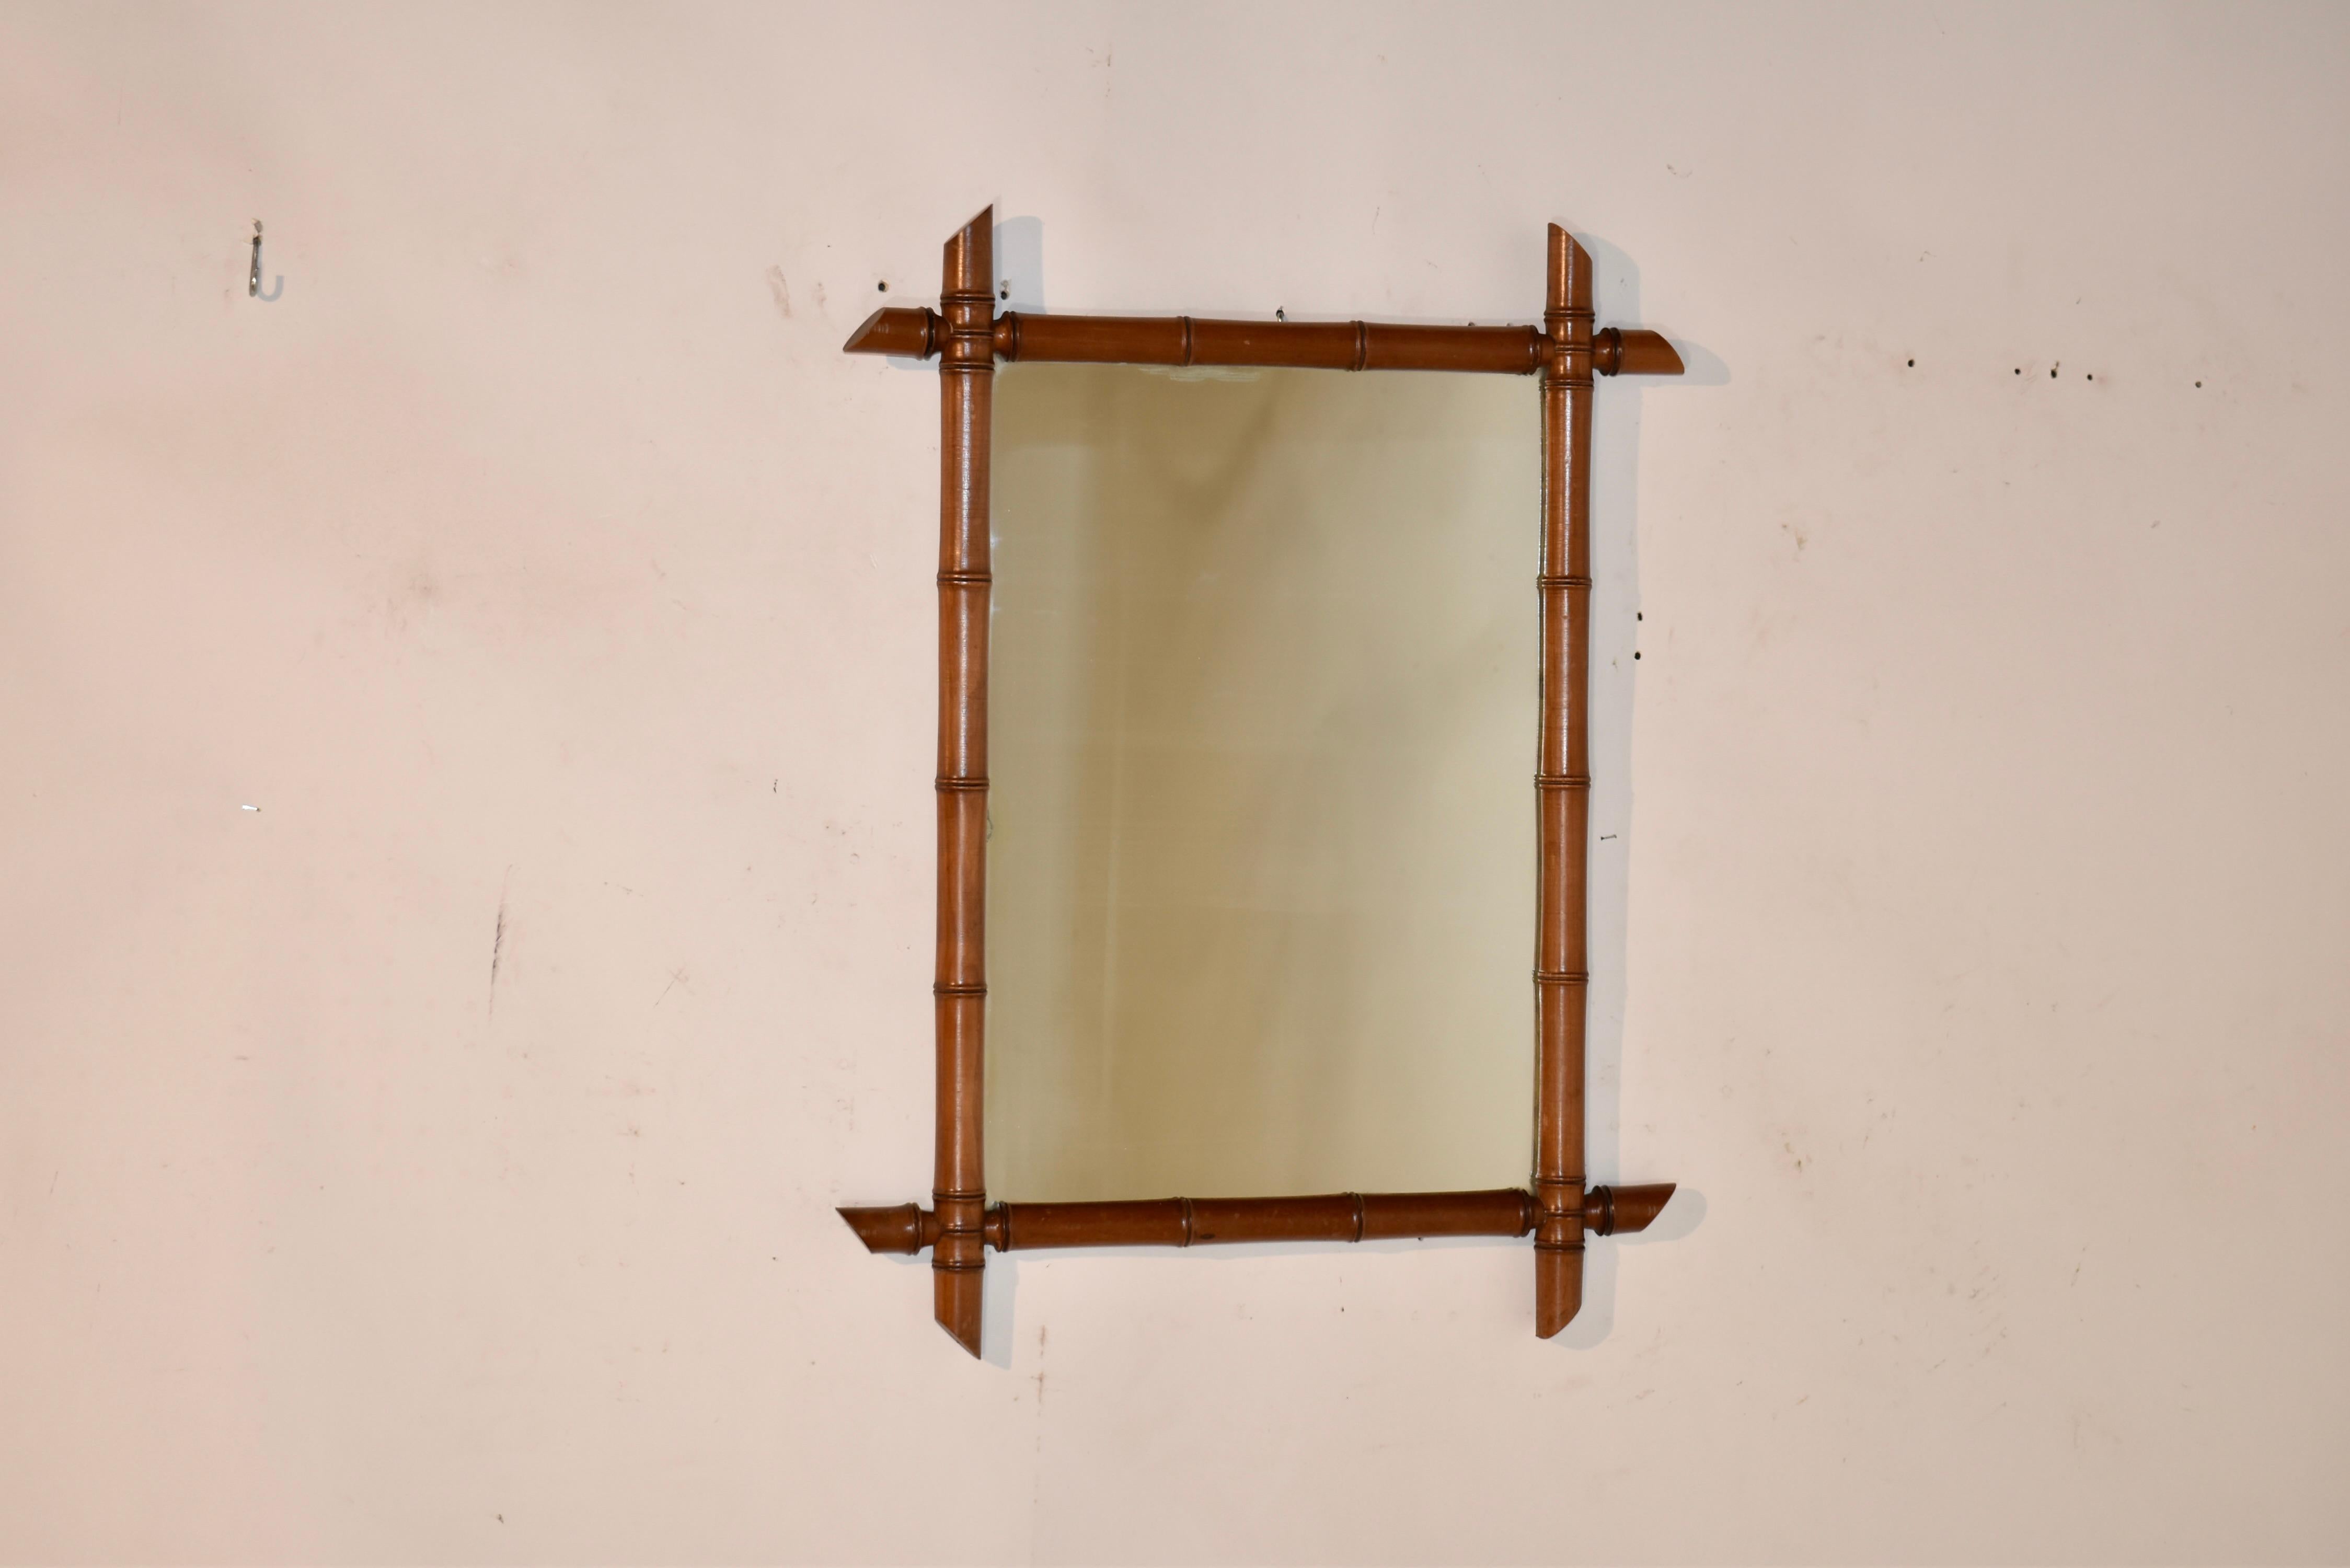 Cadre en faux bambou tourné en cerisier de France de la fin du 19e siècle, entourant un miroir.  Les objets tournés sont tournés à la main et sont d'une forme et d'une taille ravissantes.  Ces miroirs constituent de merveilleux accessoires pour tout